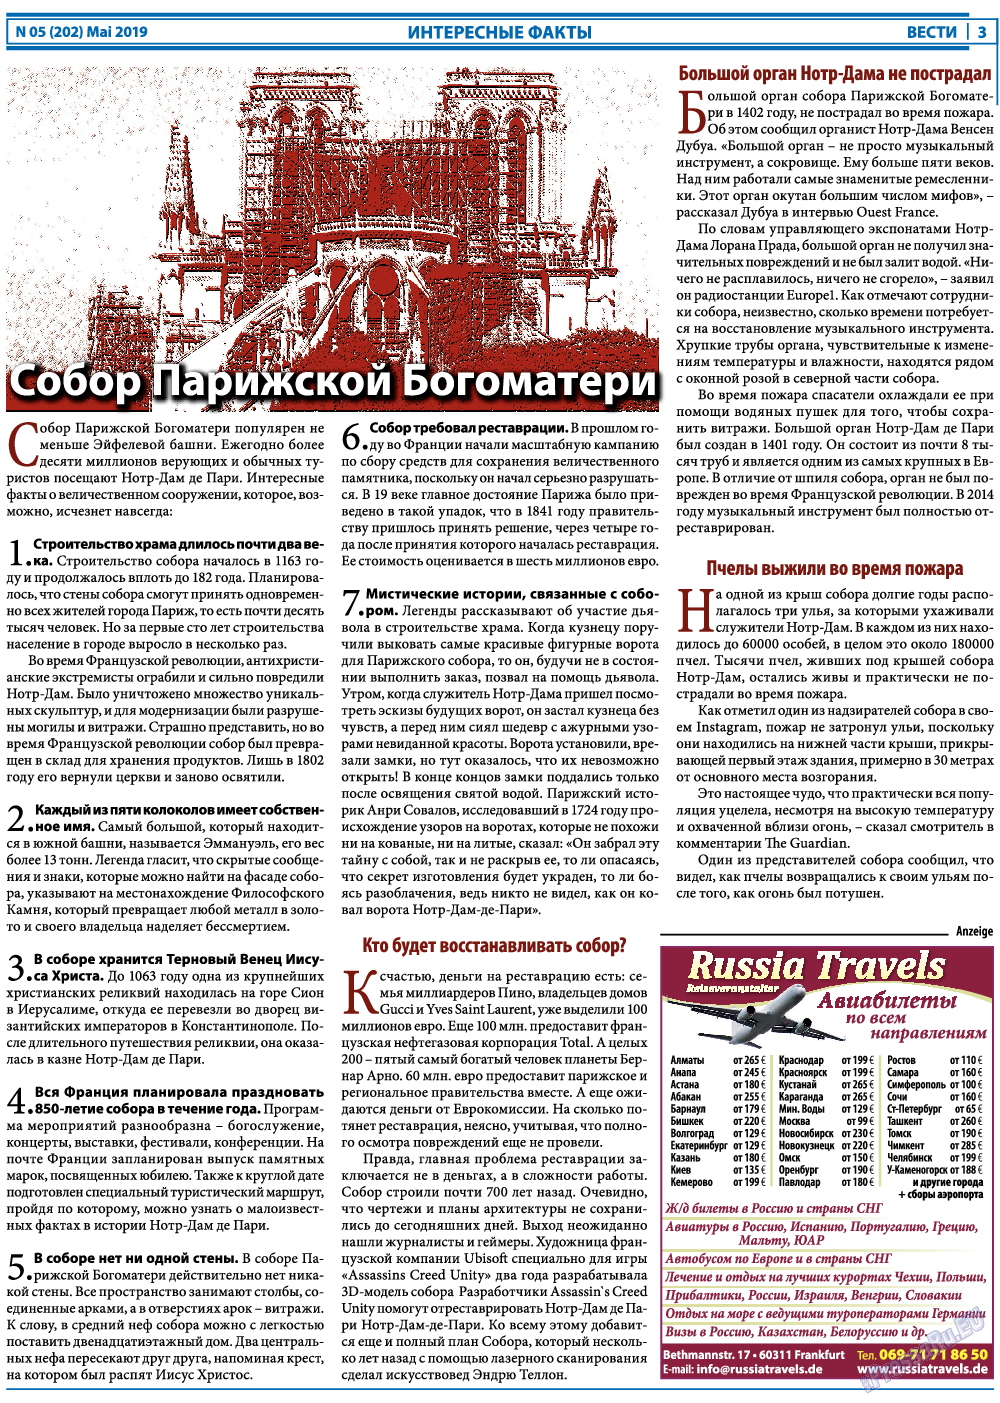 Вести, газета. 2019 №5 стр.3